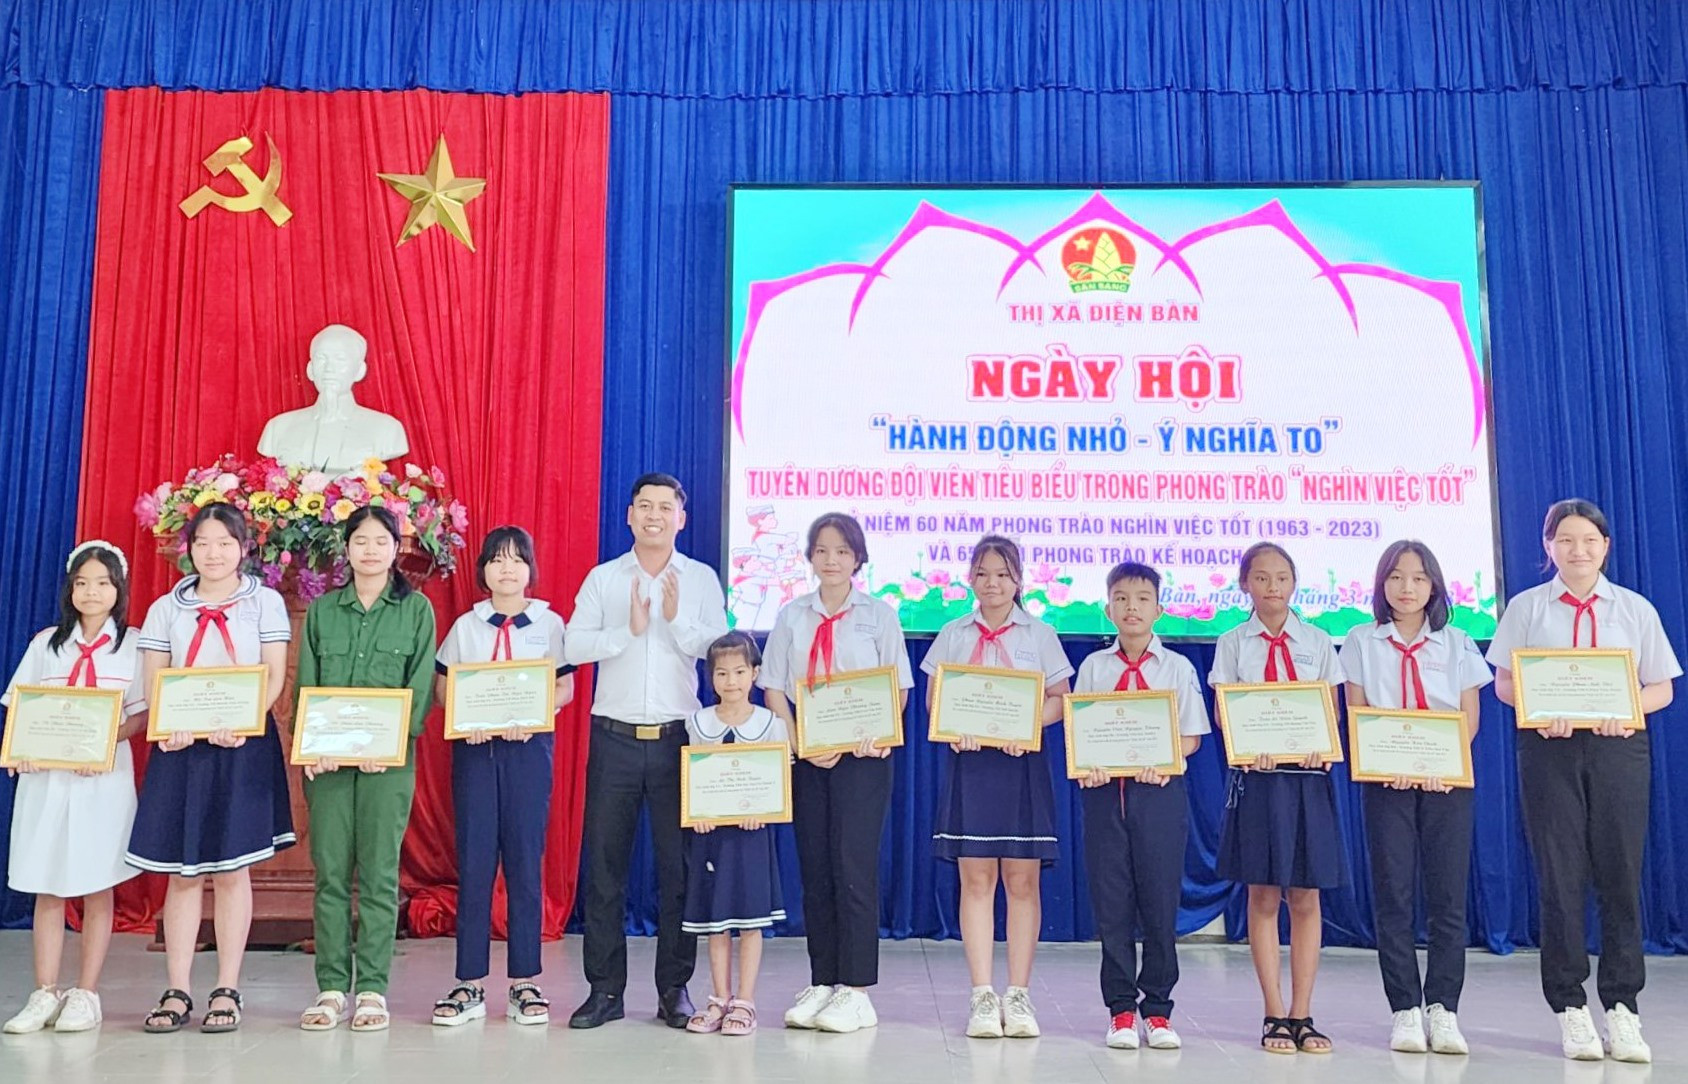 Hội đồng Đội thị xã Điện Bàn tuyên dương 11 đội viên tiêu biểu trong phong trào “Nghìn việc tốt” năm học 2022 - 2023. Ảnh: PV